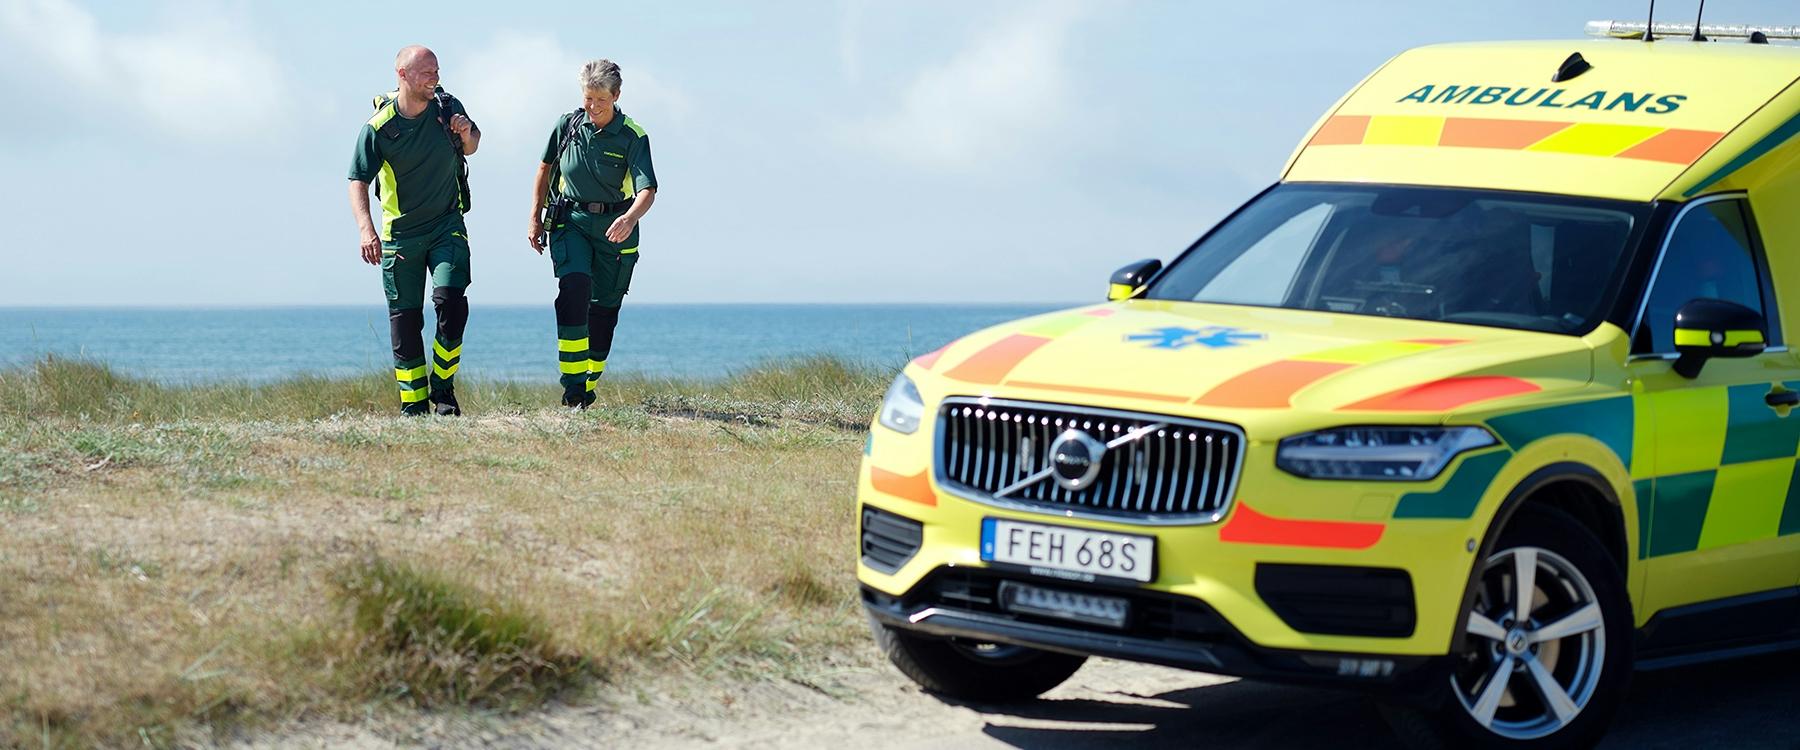 Ambulanspersonal vid ambulans på strand